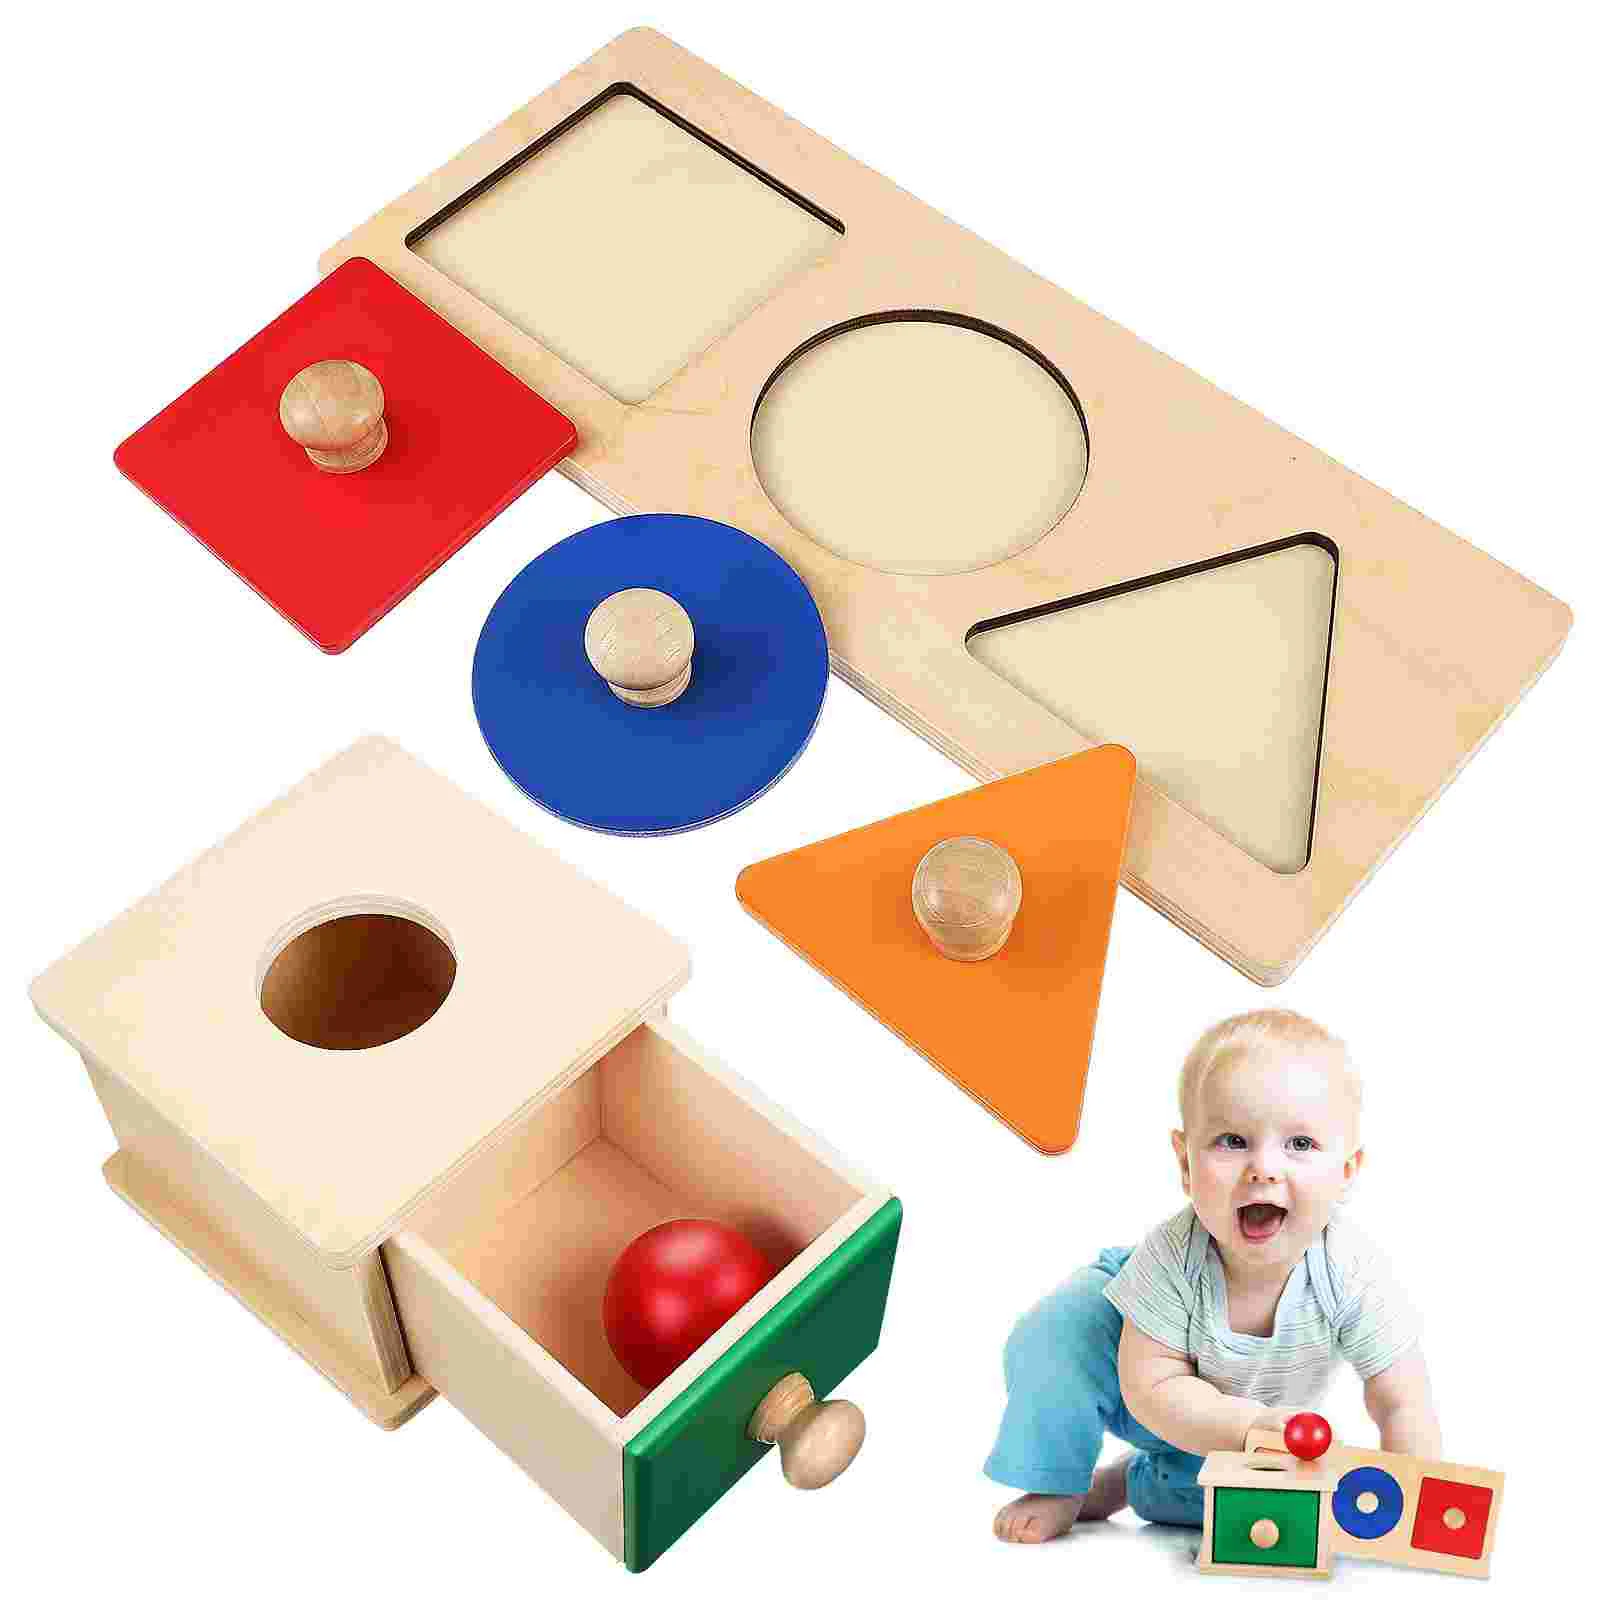 

Учебные пособия по методике Монтессори, Детские Сенсорные игрушки, метательная коробка, деревянные шарики, головоломки для сортировки